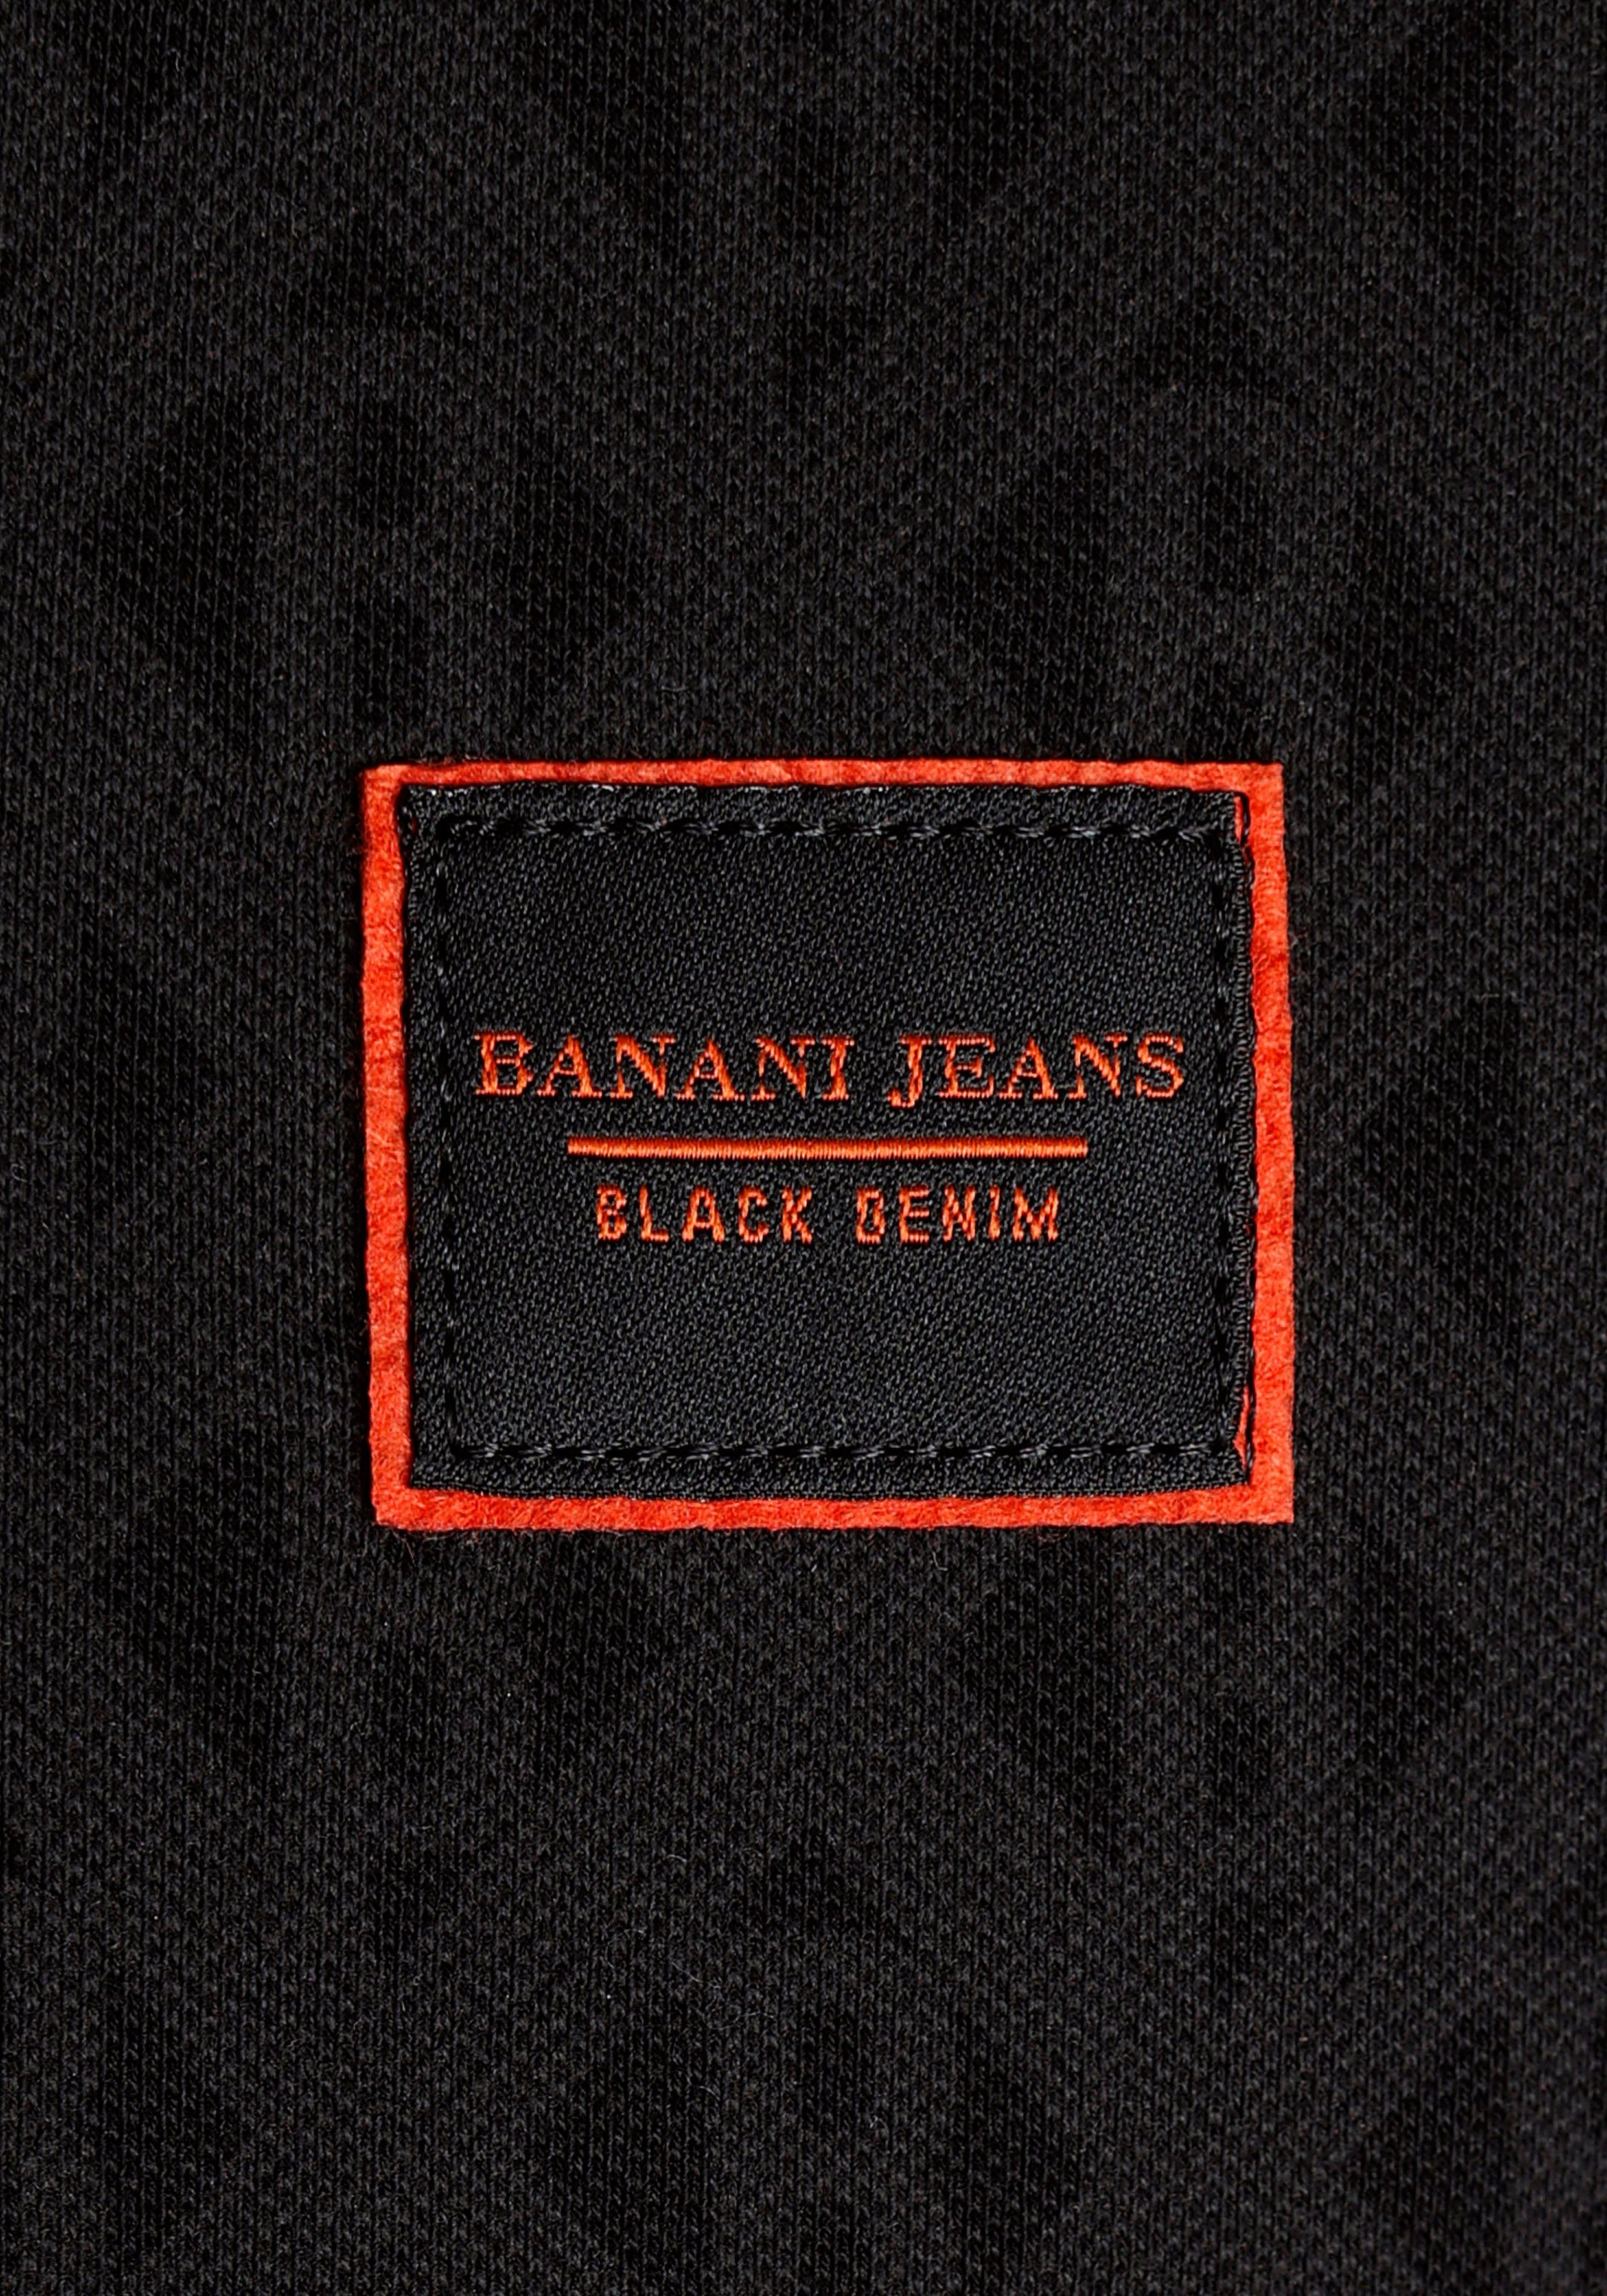 Poloshirt Banani Bruno